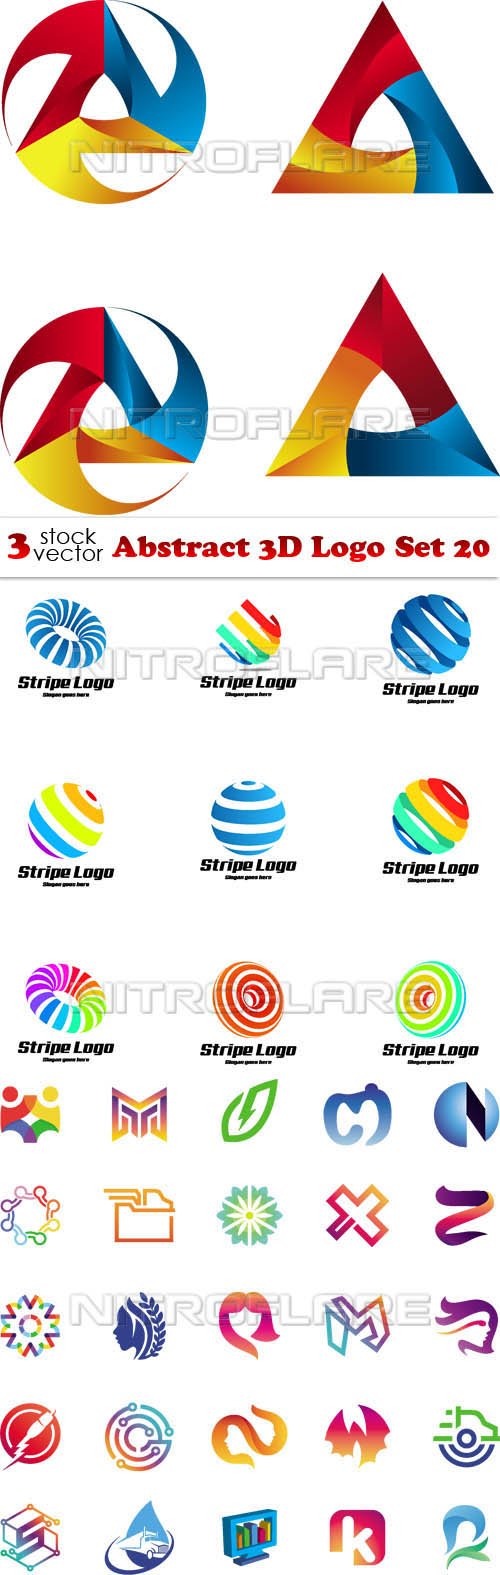 Vectors - Abstract 3D Logo Set 20